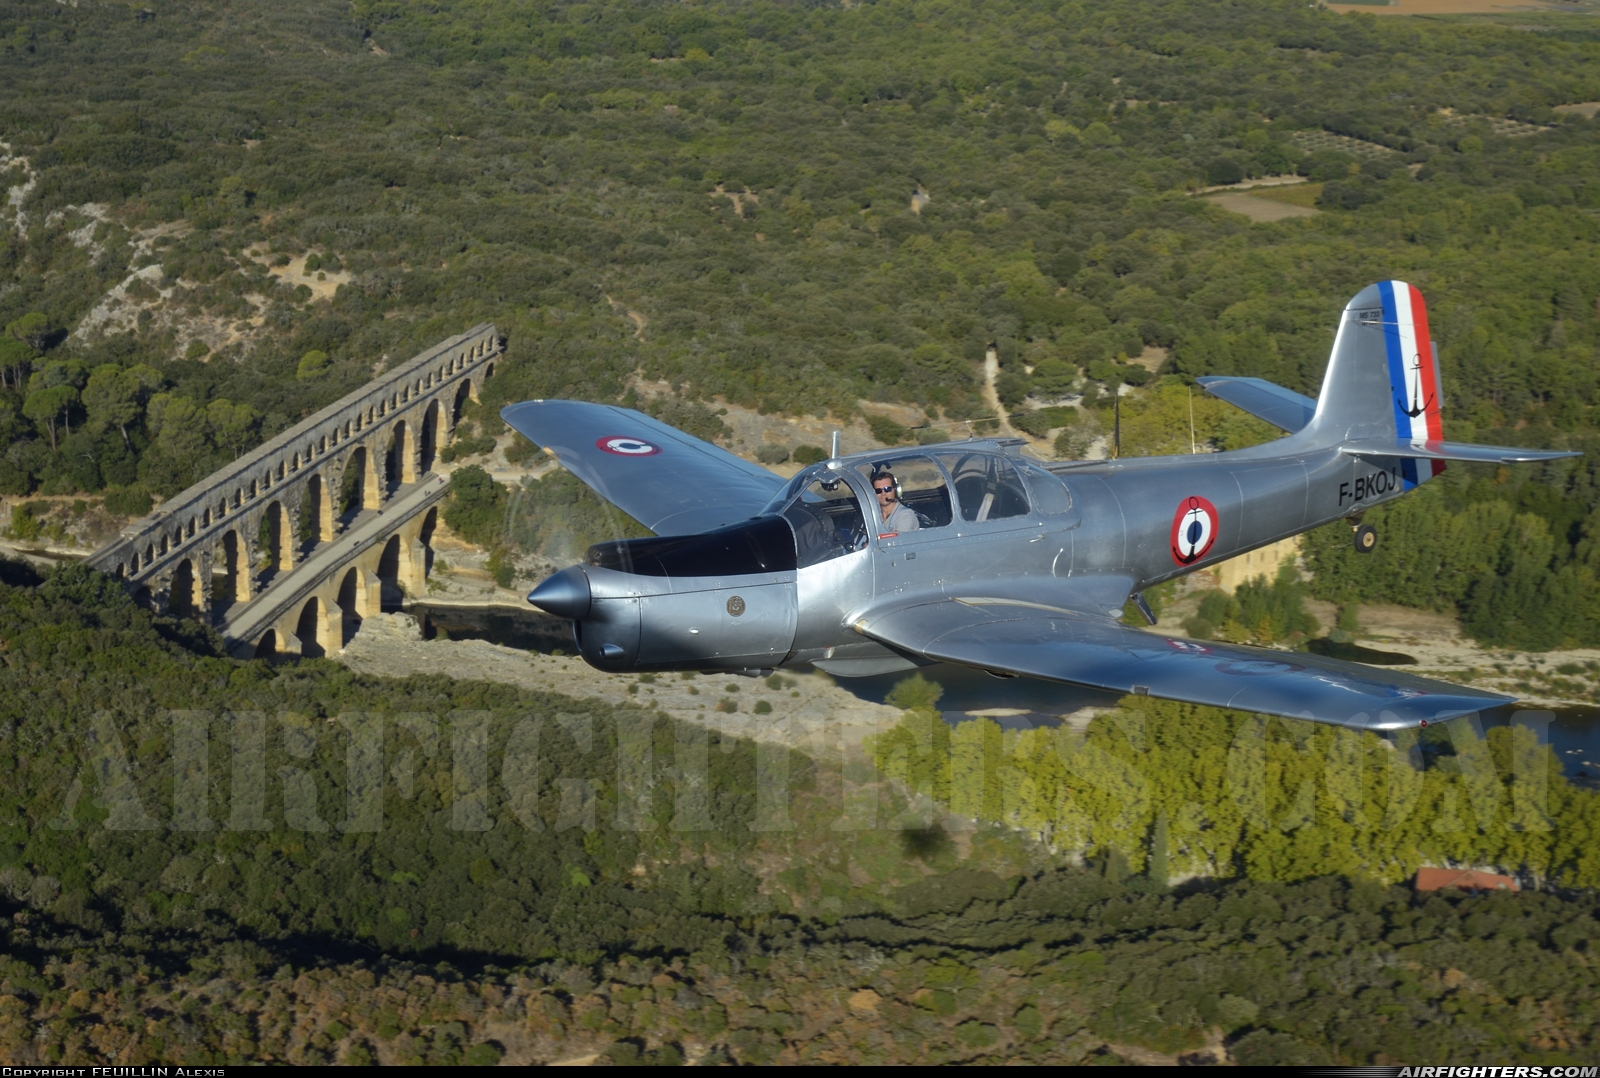 Private Morane-Saulnier MS.733 Alcyon F-BKOJ at In Flight, France